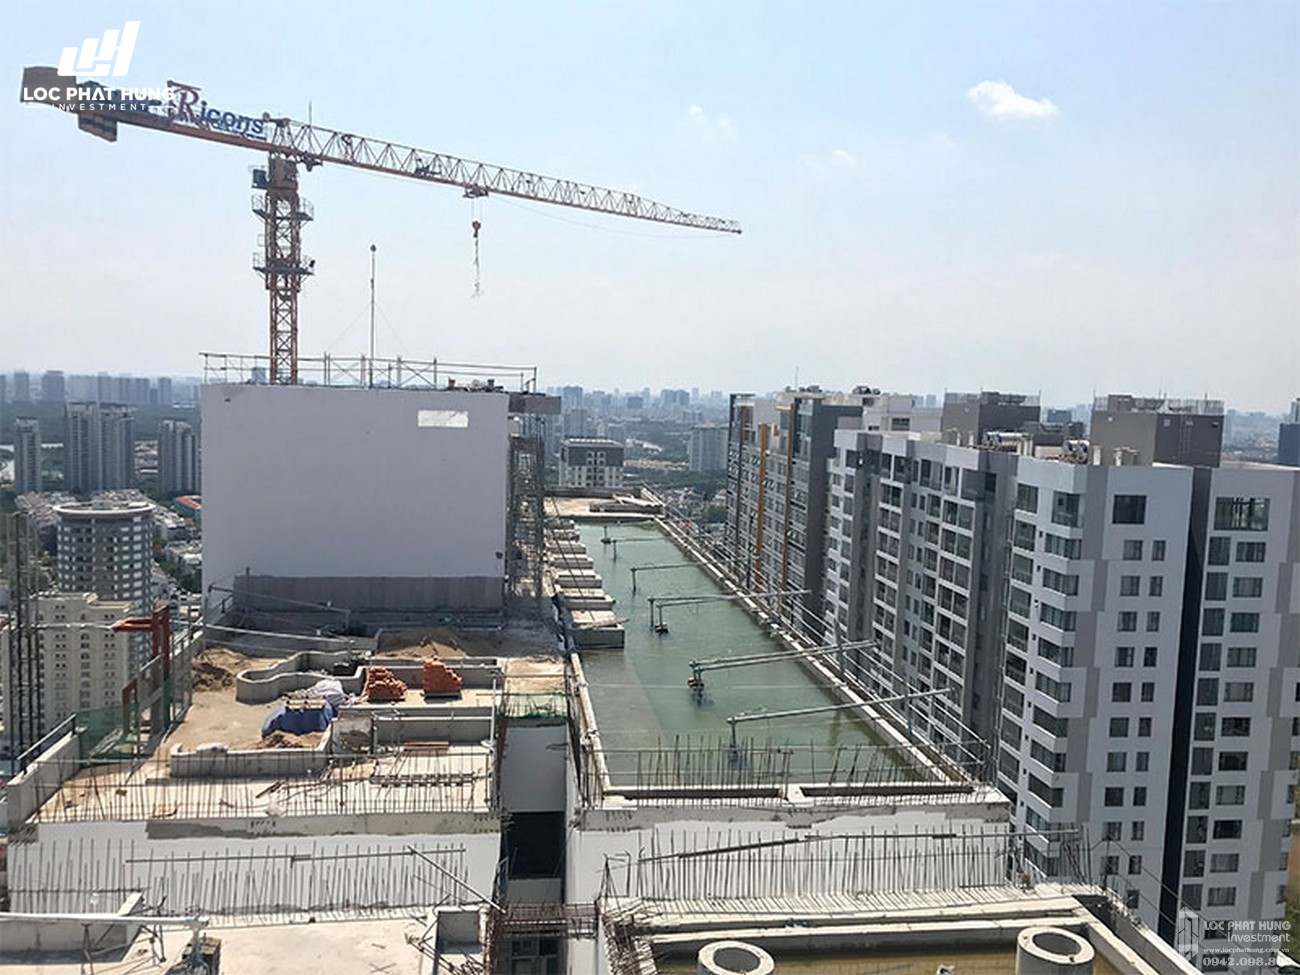 Tiến độ River Panorama dự án căn hộ chung cư Quận 7 Đường Hoàng Quốc Việt chủ đầu tư An Gia Investment